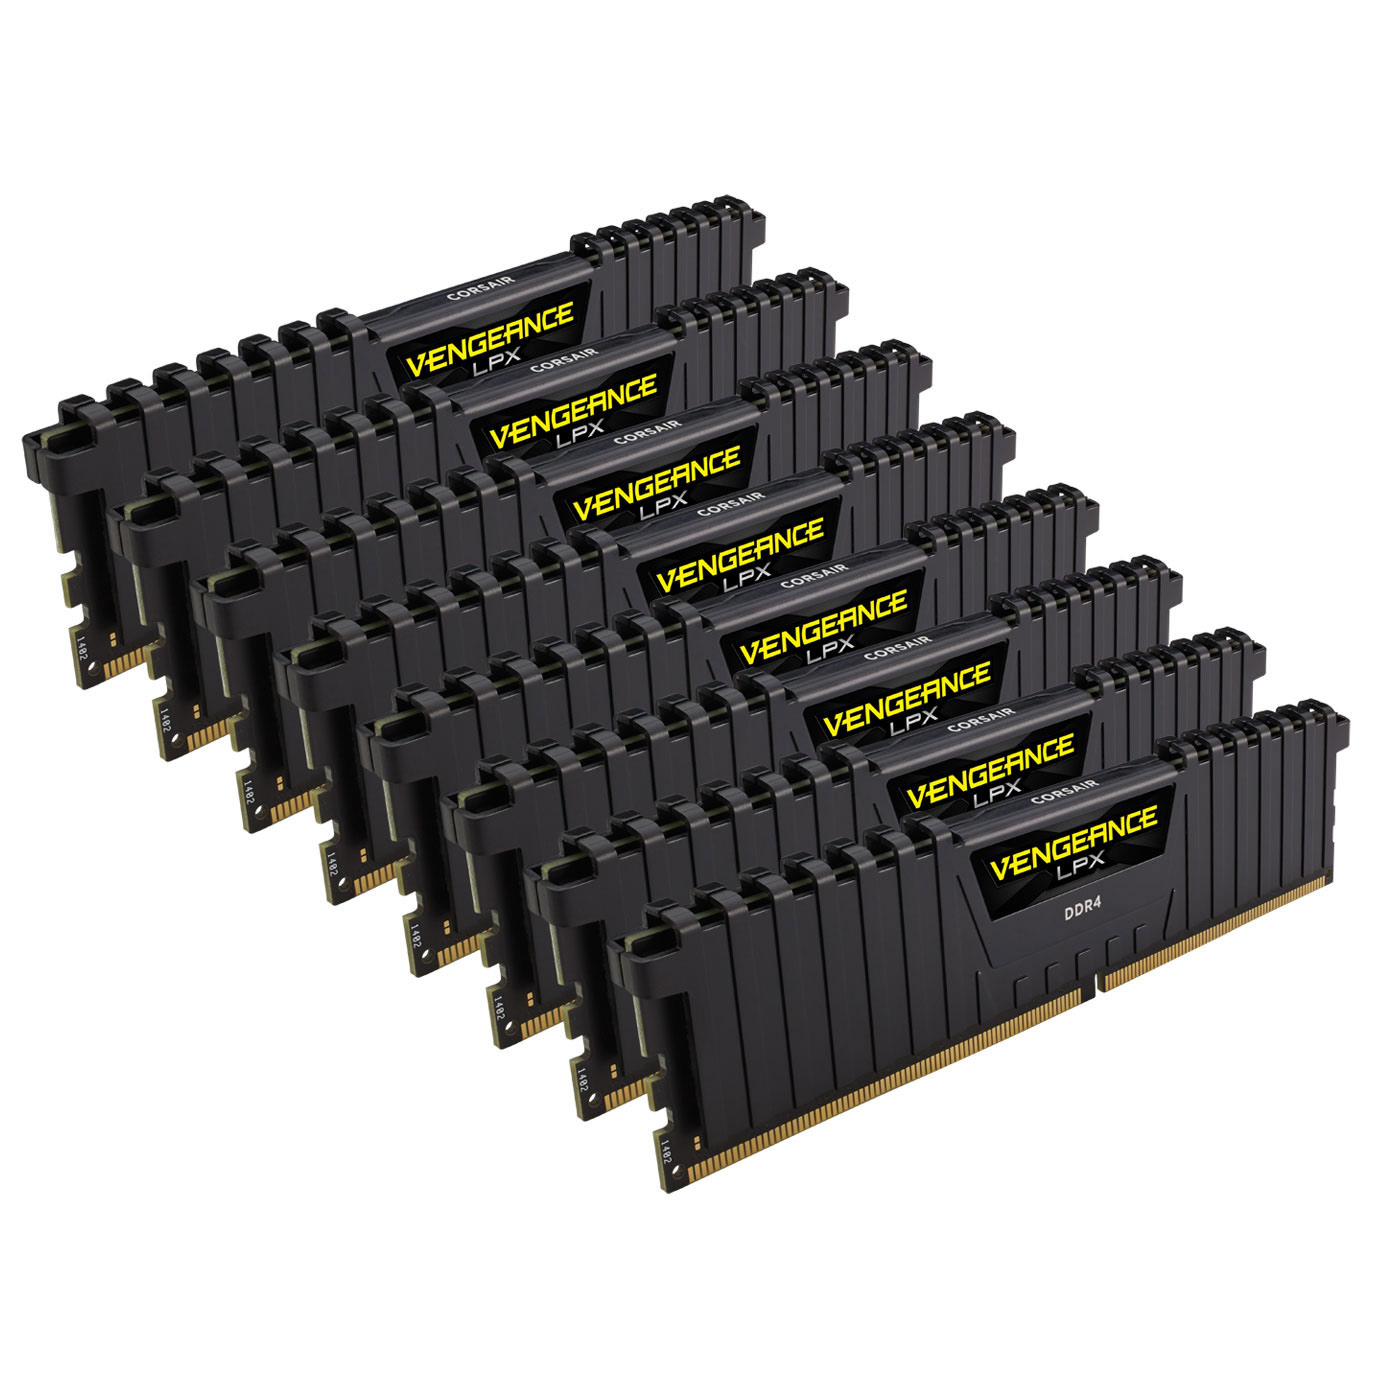 Corsair Vengeance LPX 256GB (8x32GB) DDR4 PC4-25600C16 3200MHz Quad Channel Kit (Black)